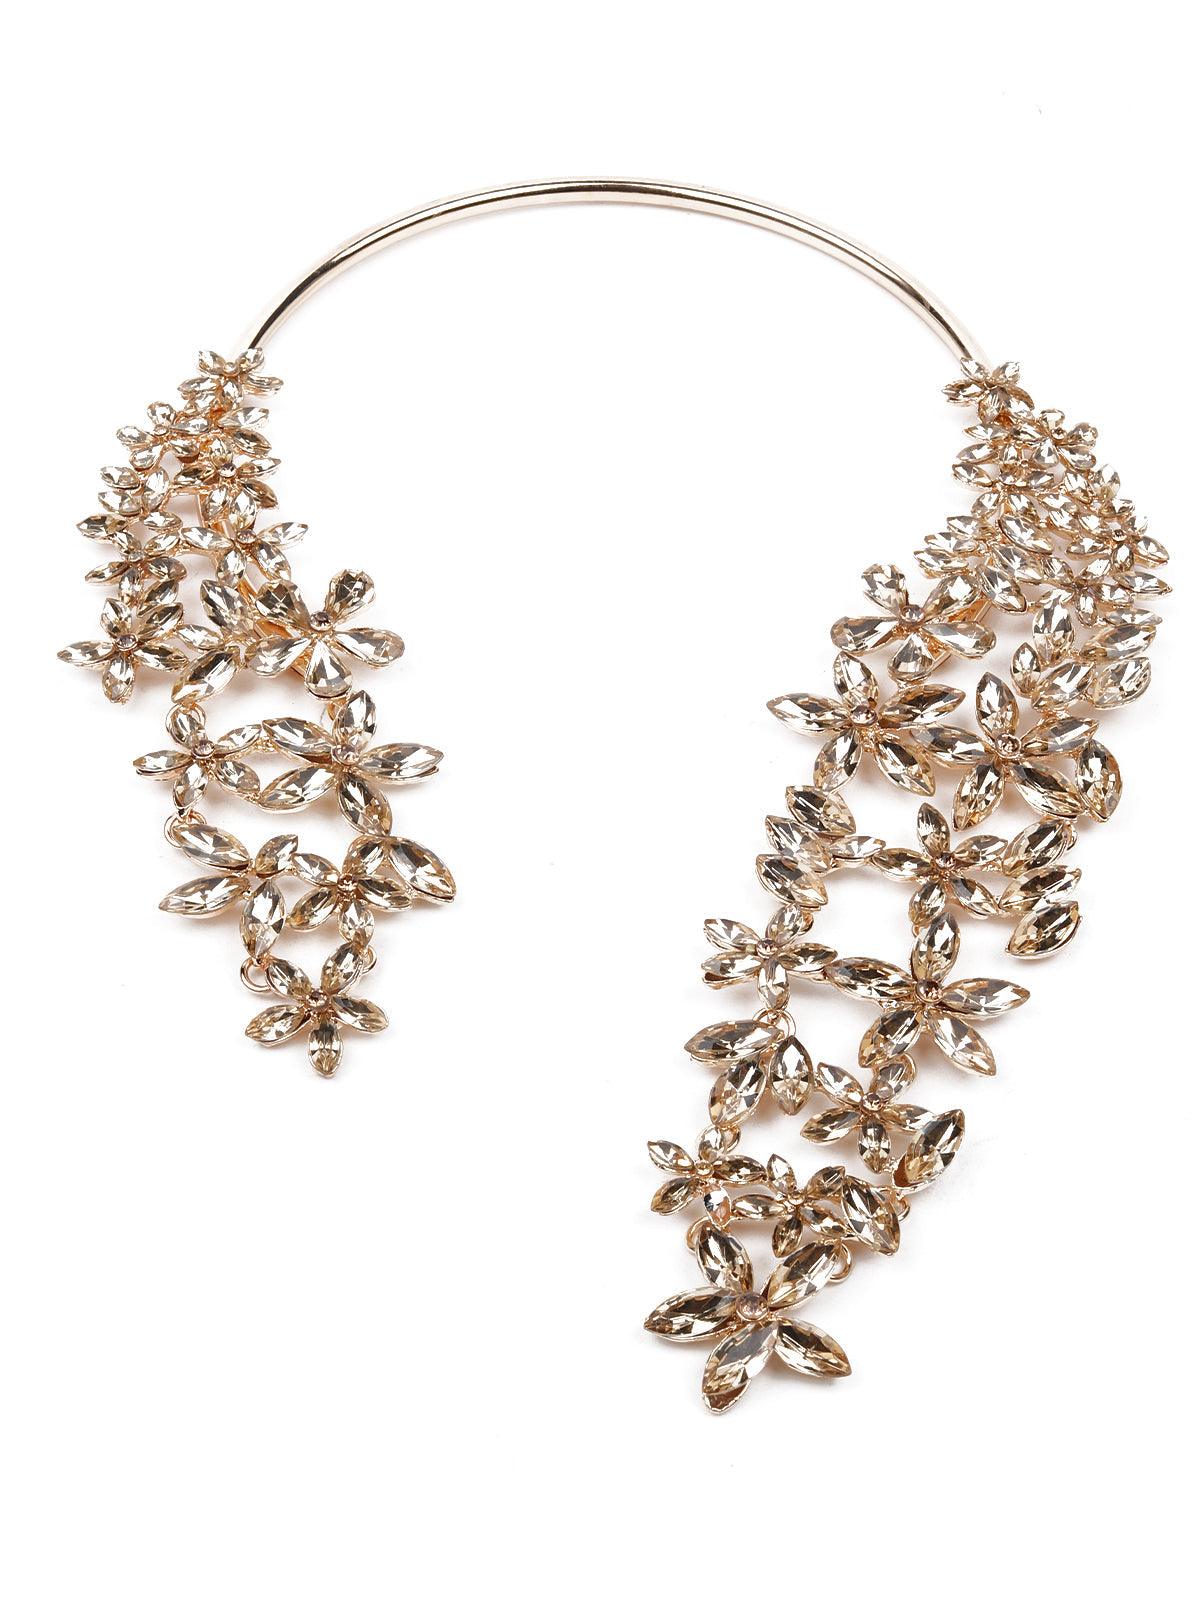 Women's Exquisite Crystal-Embellished Necklace - Odette